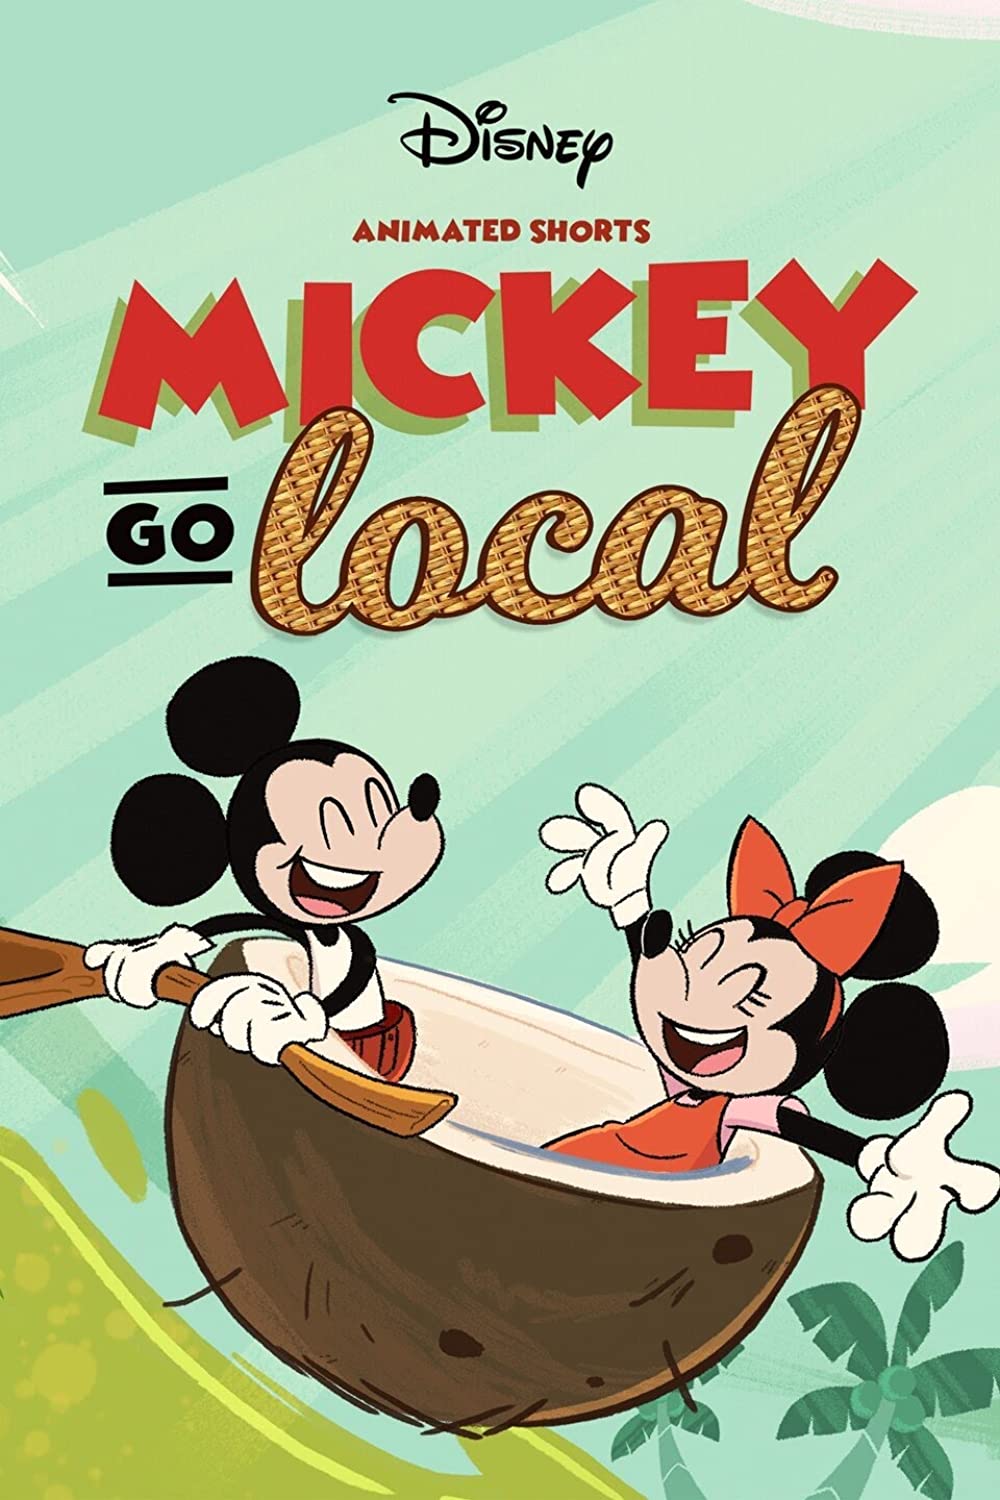 Filmbeschreibung zu Mickey Go Local